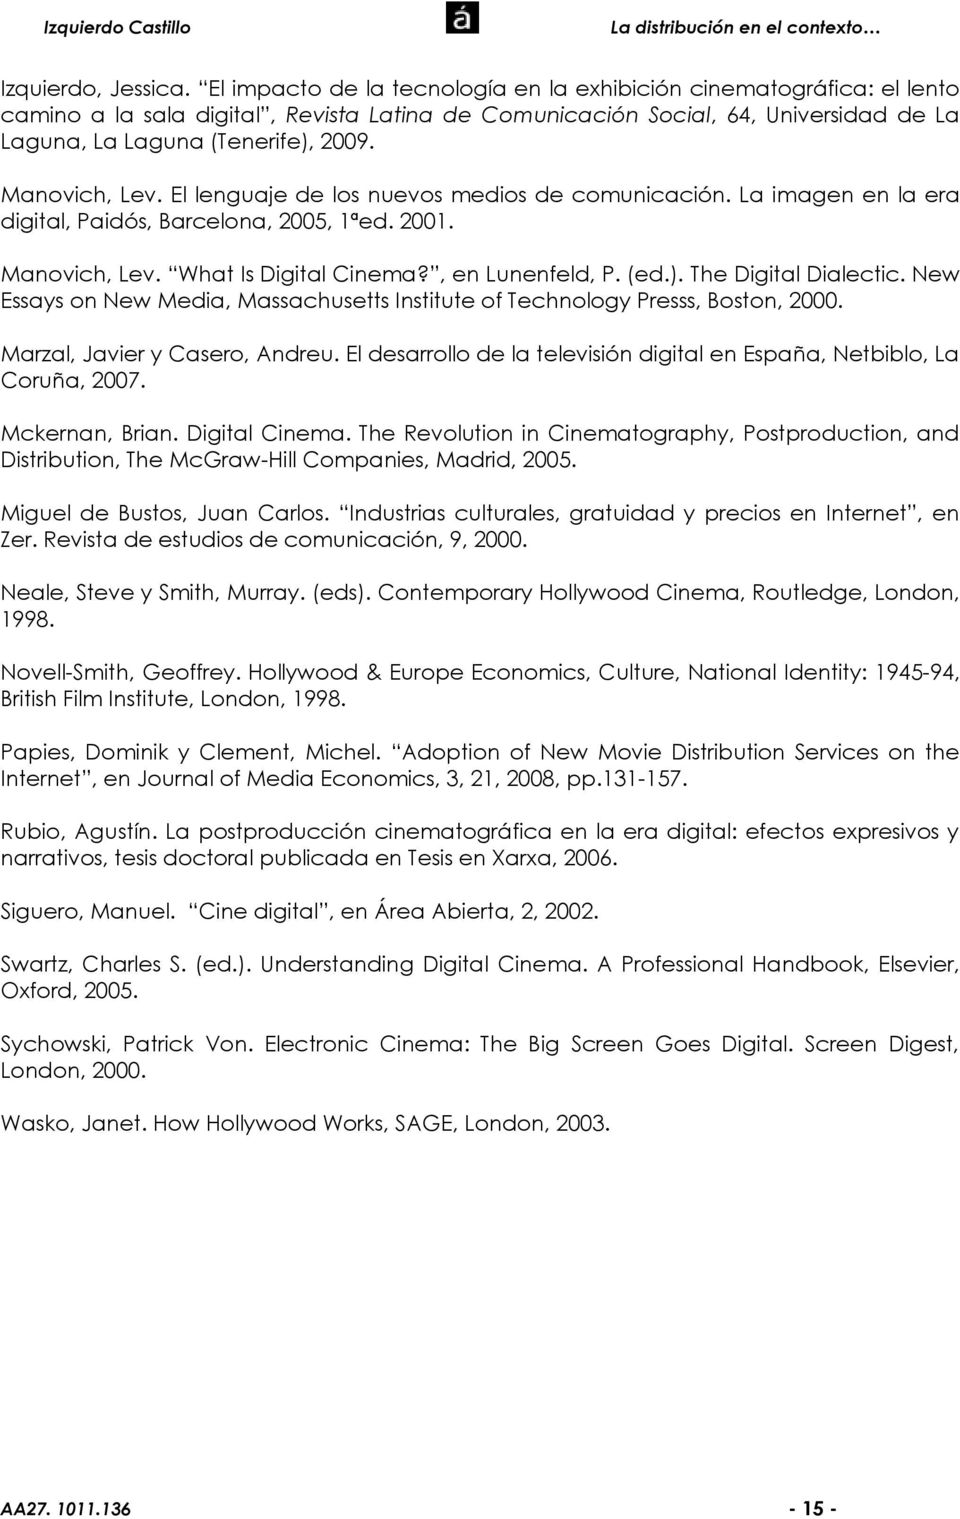 New Essays on New Media, Massachusetts Institute of Technology Presss, Boston, 2000. Marzal, Javier y Casero, Andreu. El desarrollo de la televisión digital en España, Netbiblo, La Coruña, 2007.